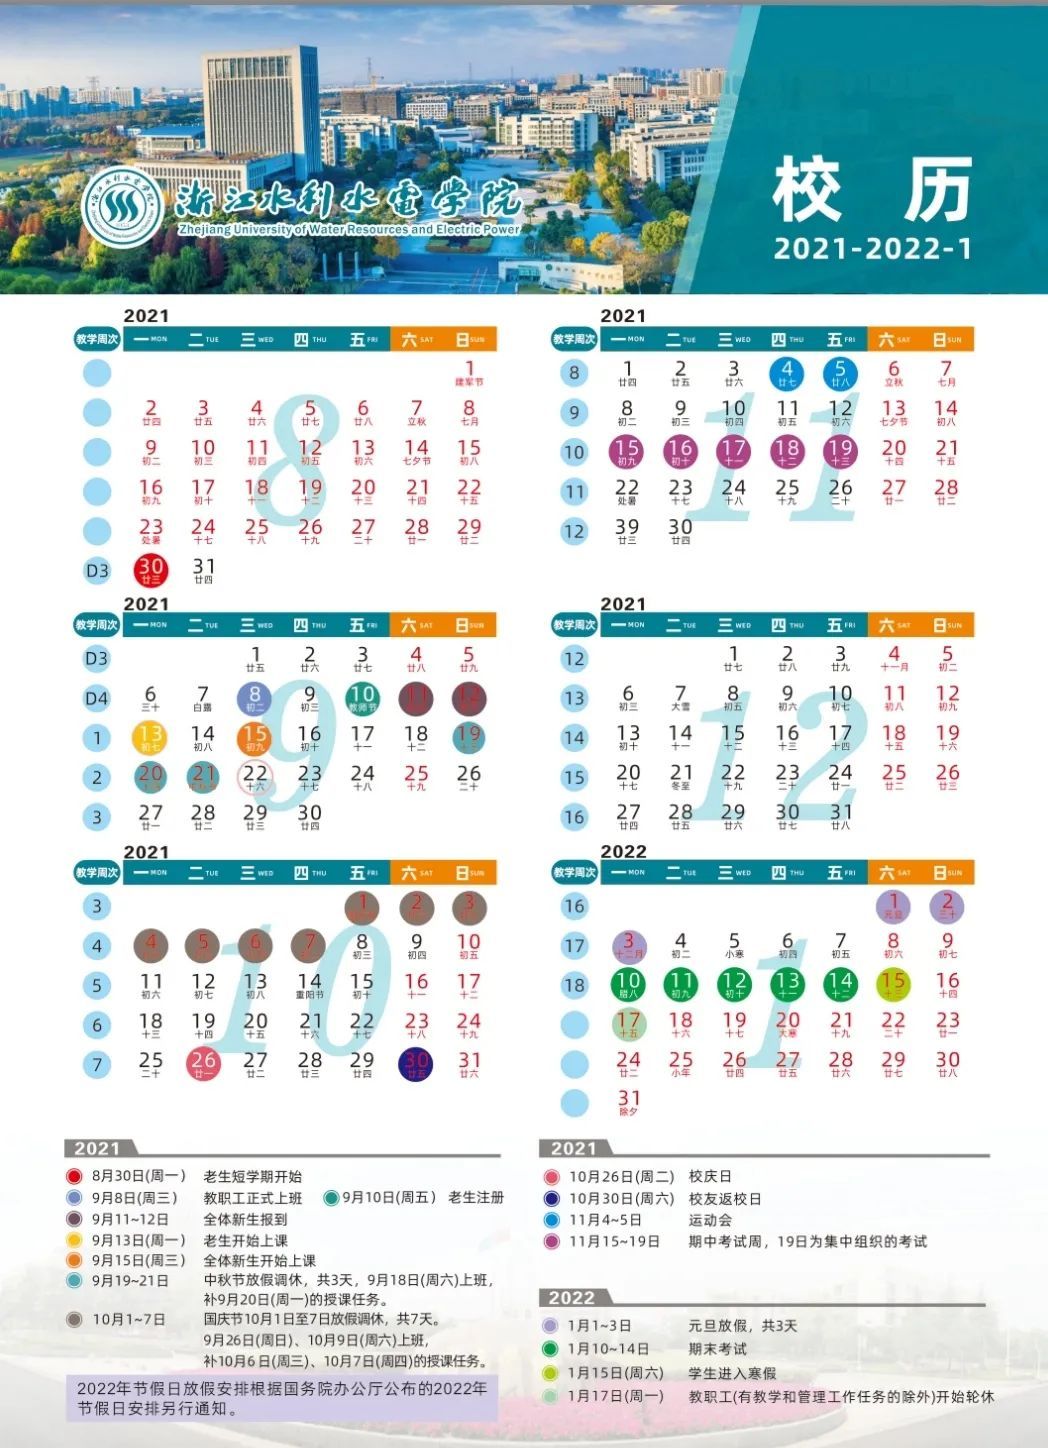 2022浙江水利水电学院寒假放假时间公布 几号开始放寒假